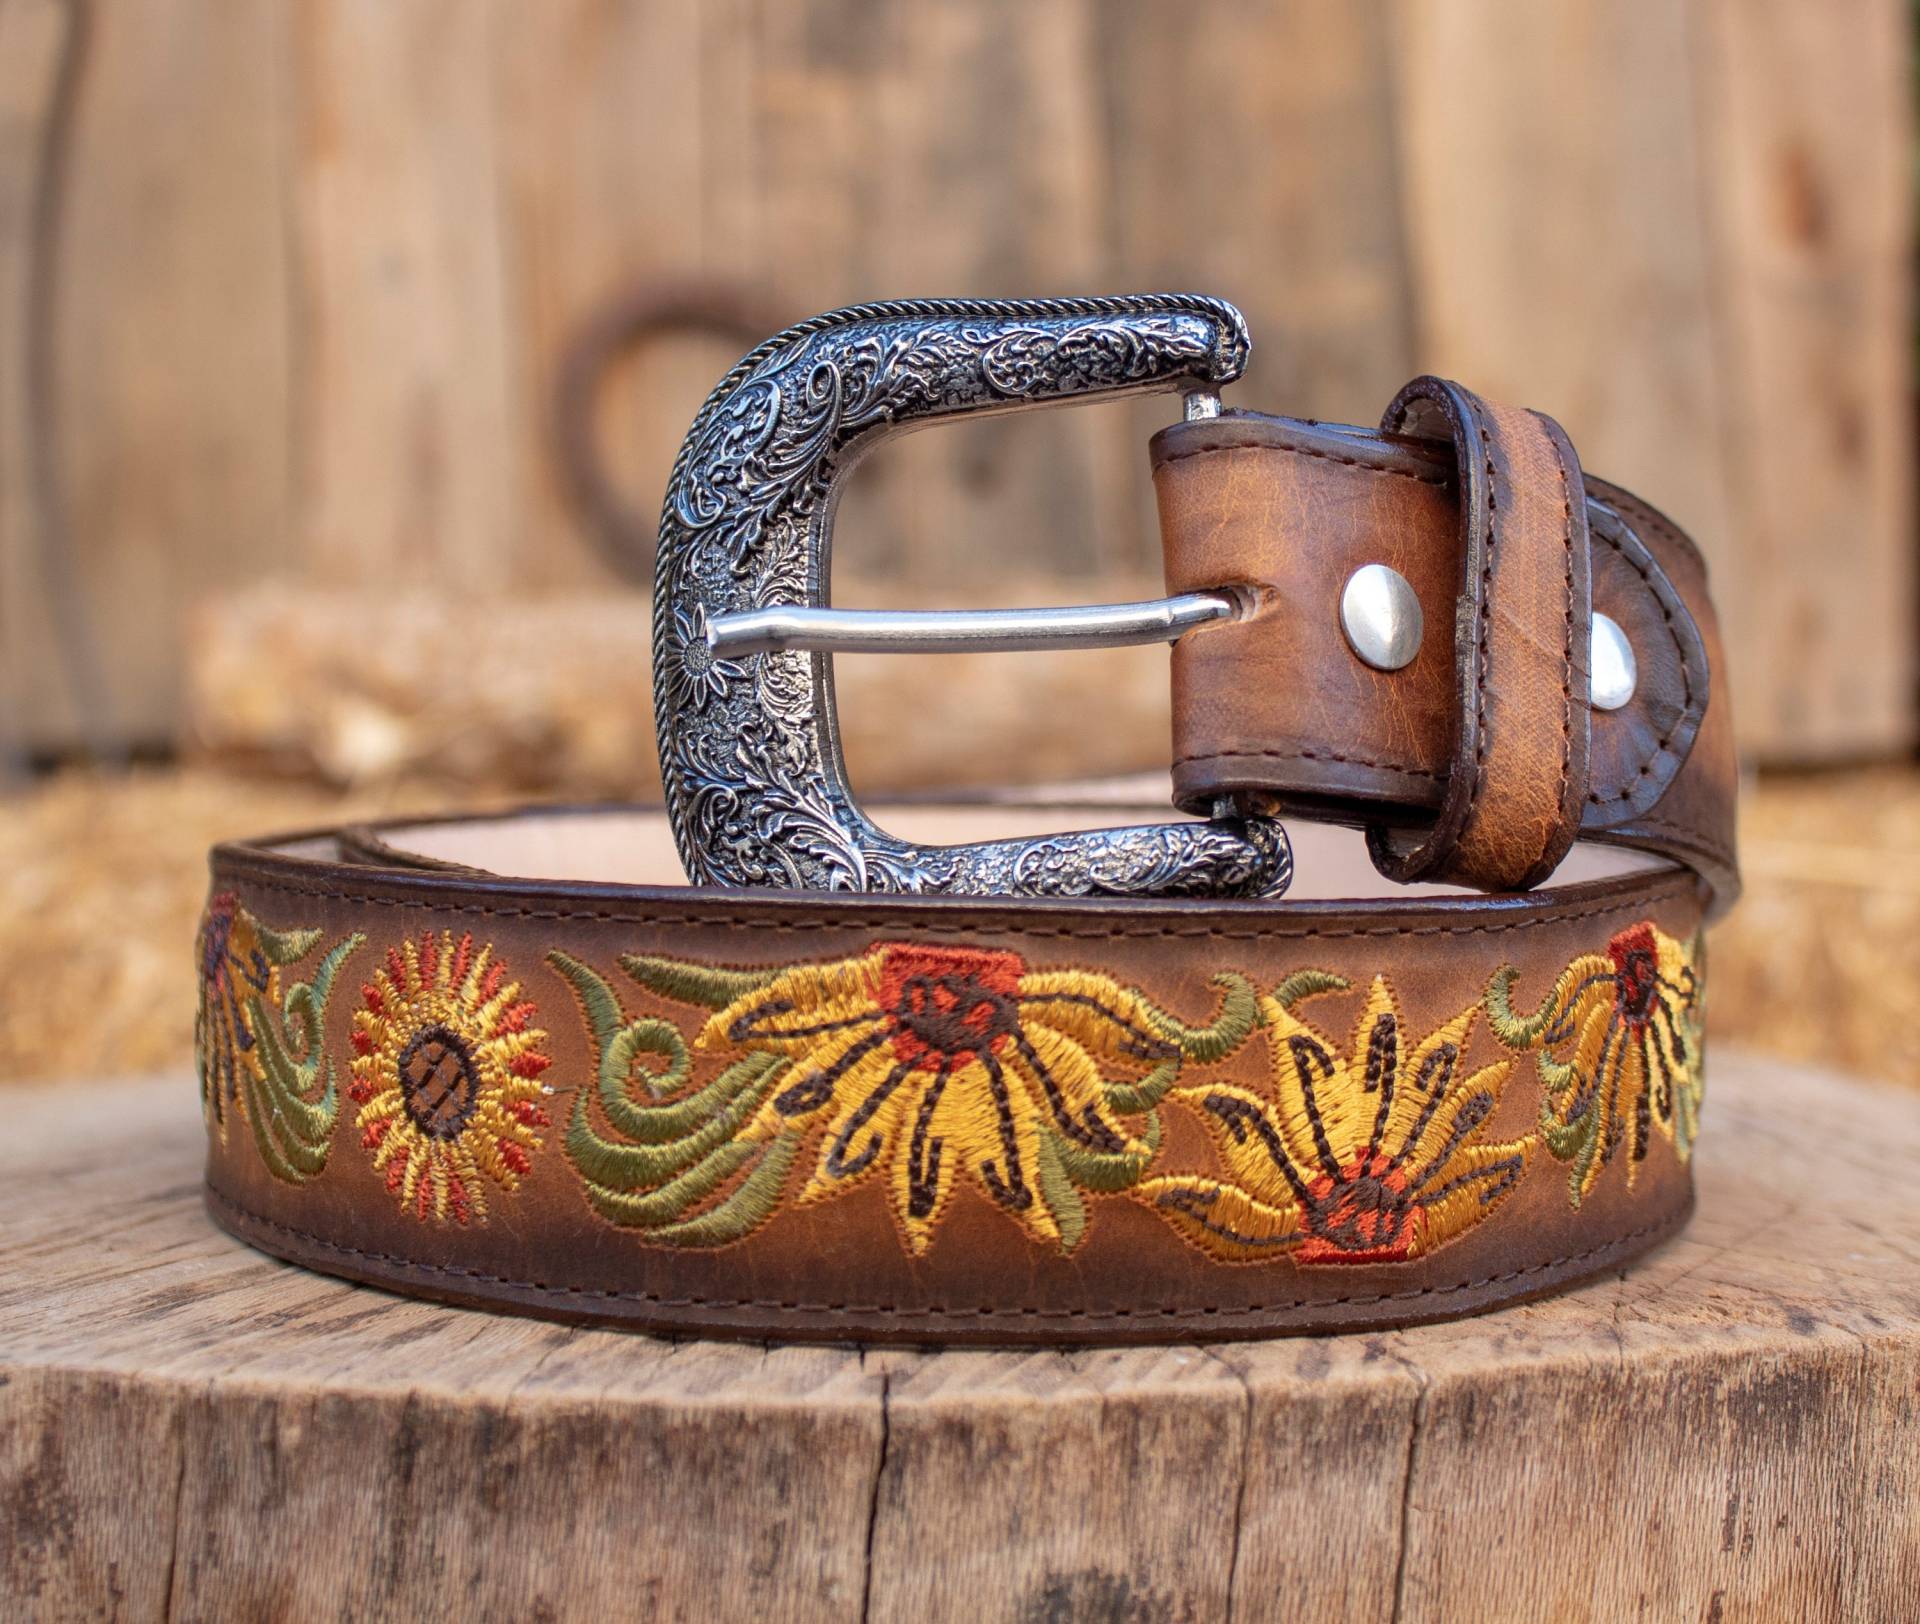 Damen Sonnenblume Bestickt Western Cowgirl Cowboy Ledergürtel Cinto Girasol von vvmexico